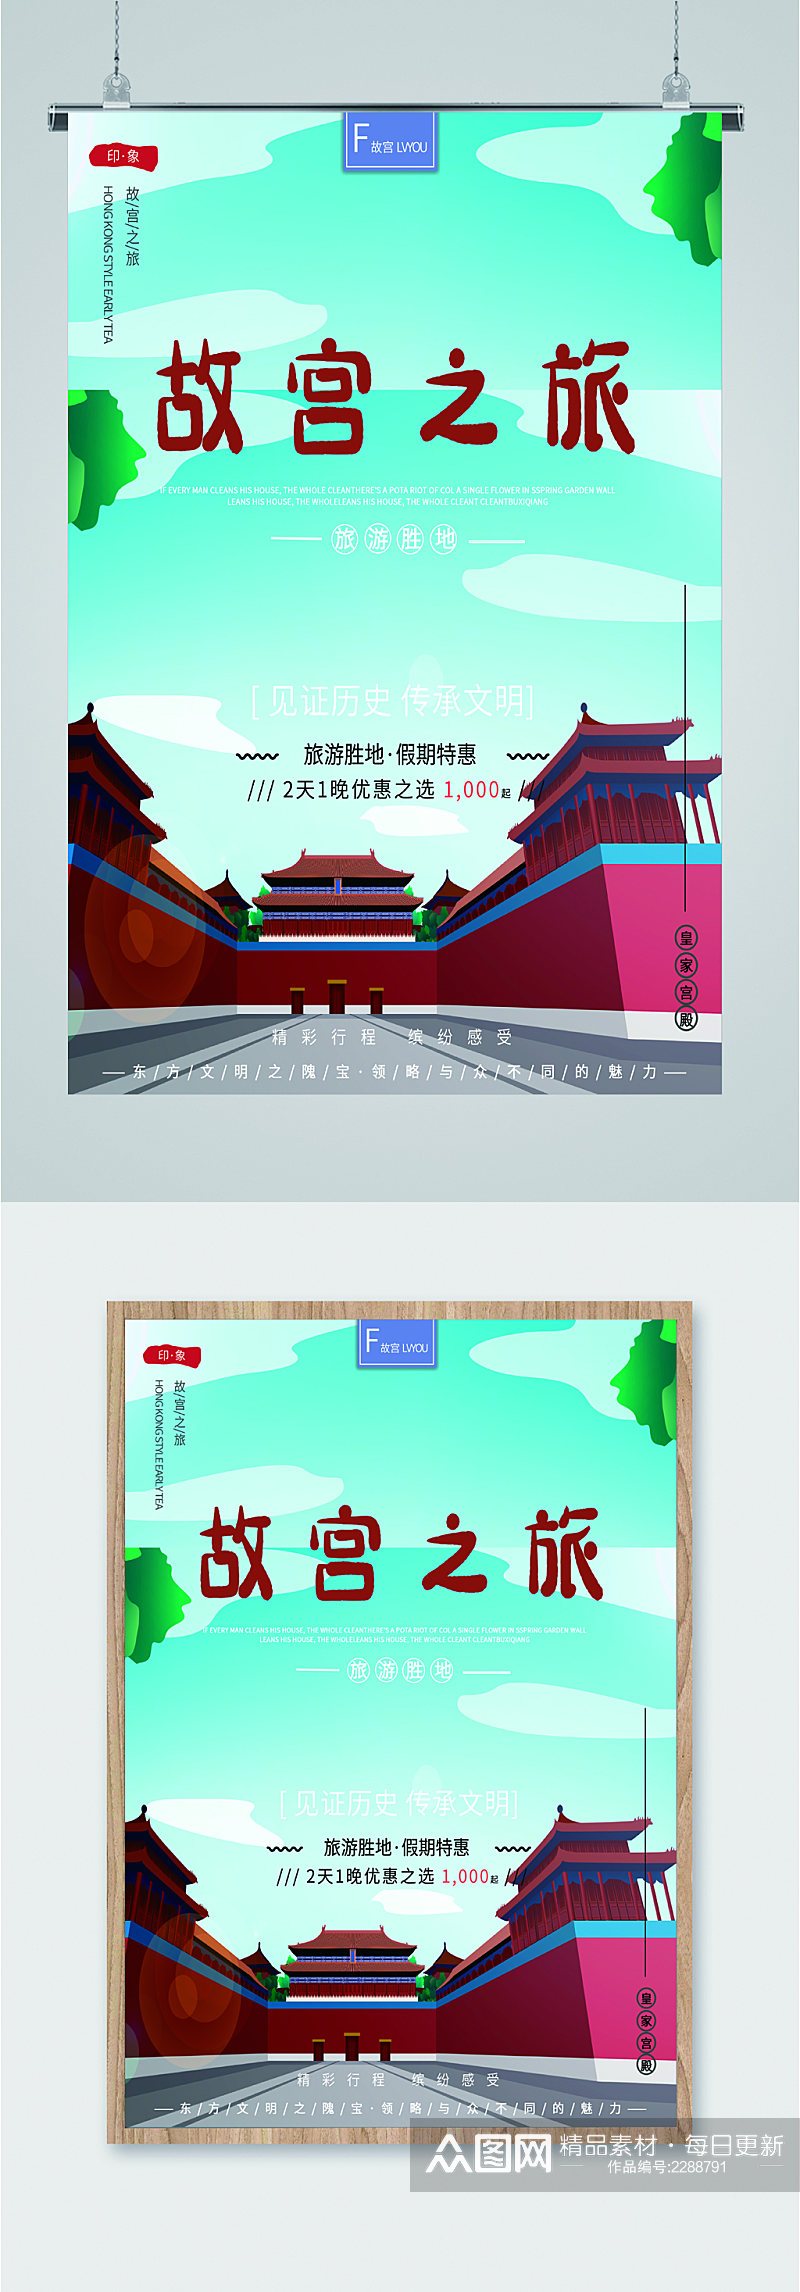 故宫之旅旅游胜地海报素材